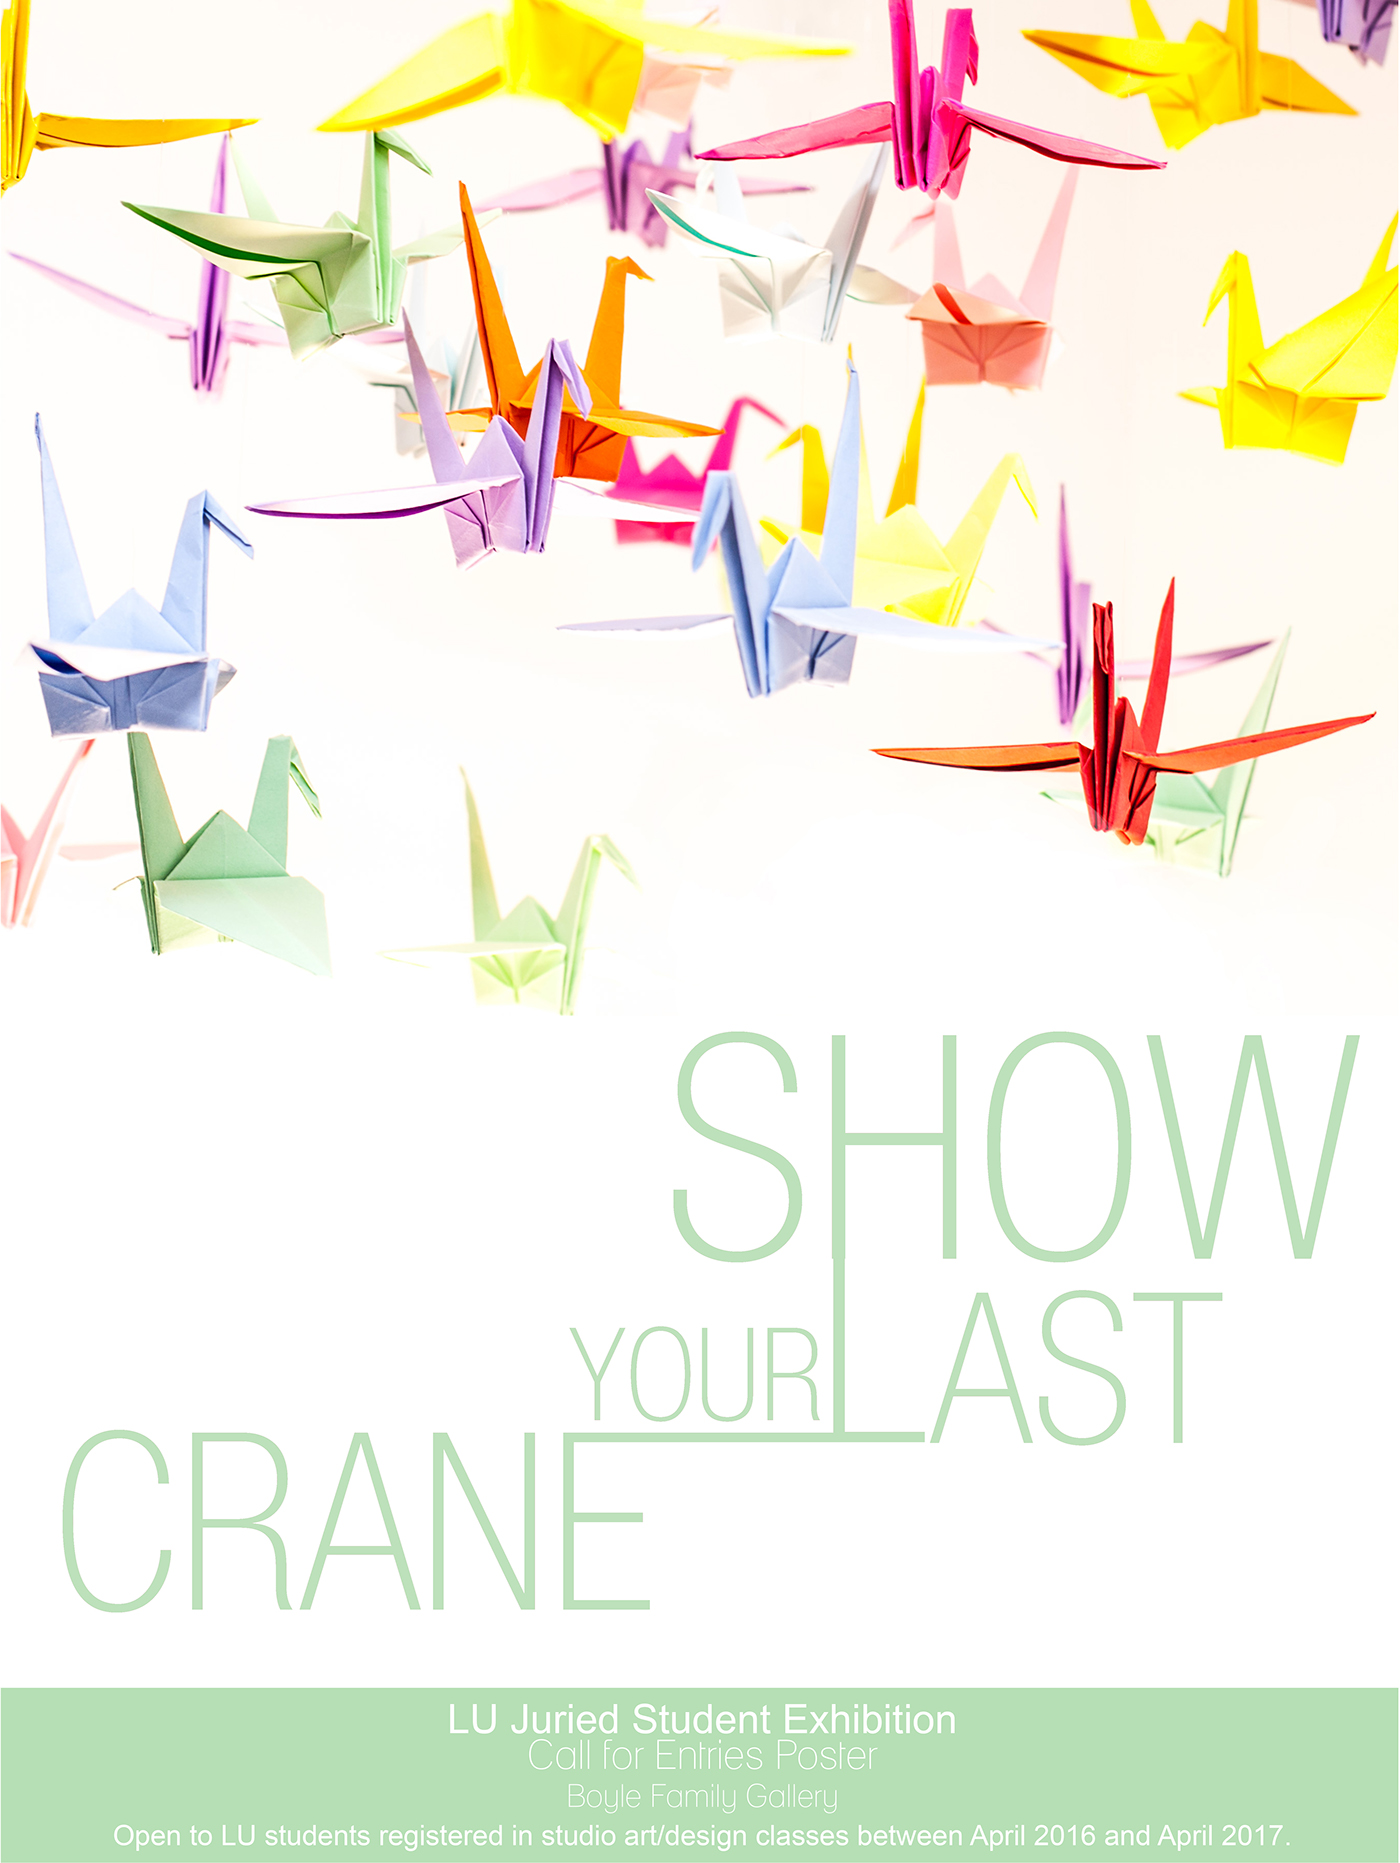 paper cranes origami  Exhibition  art birds wish cranes